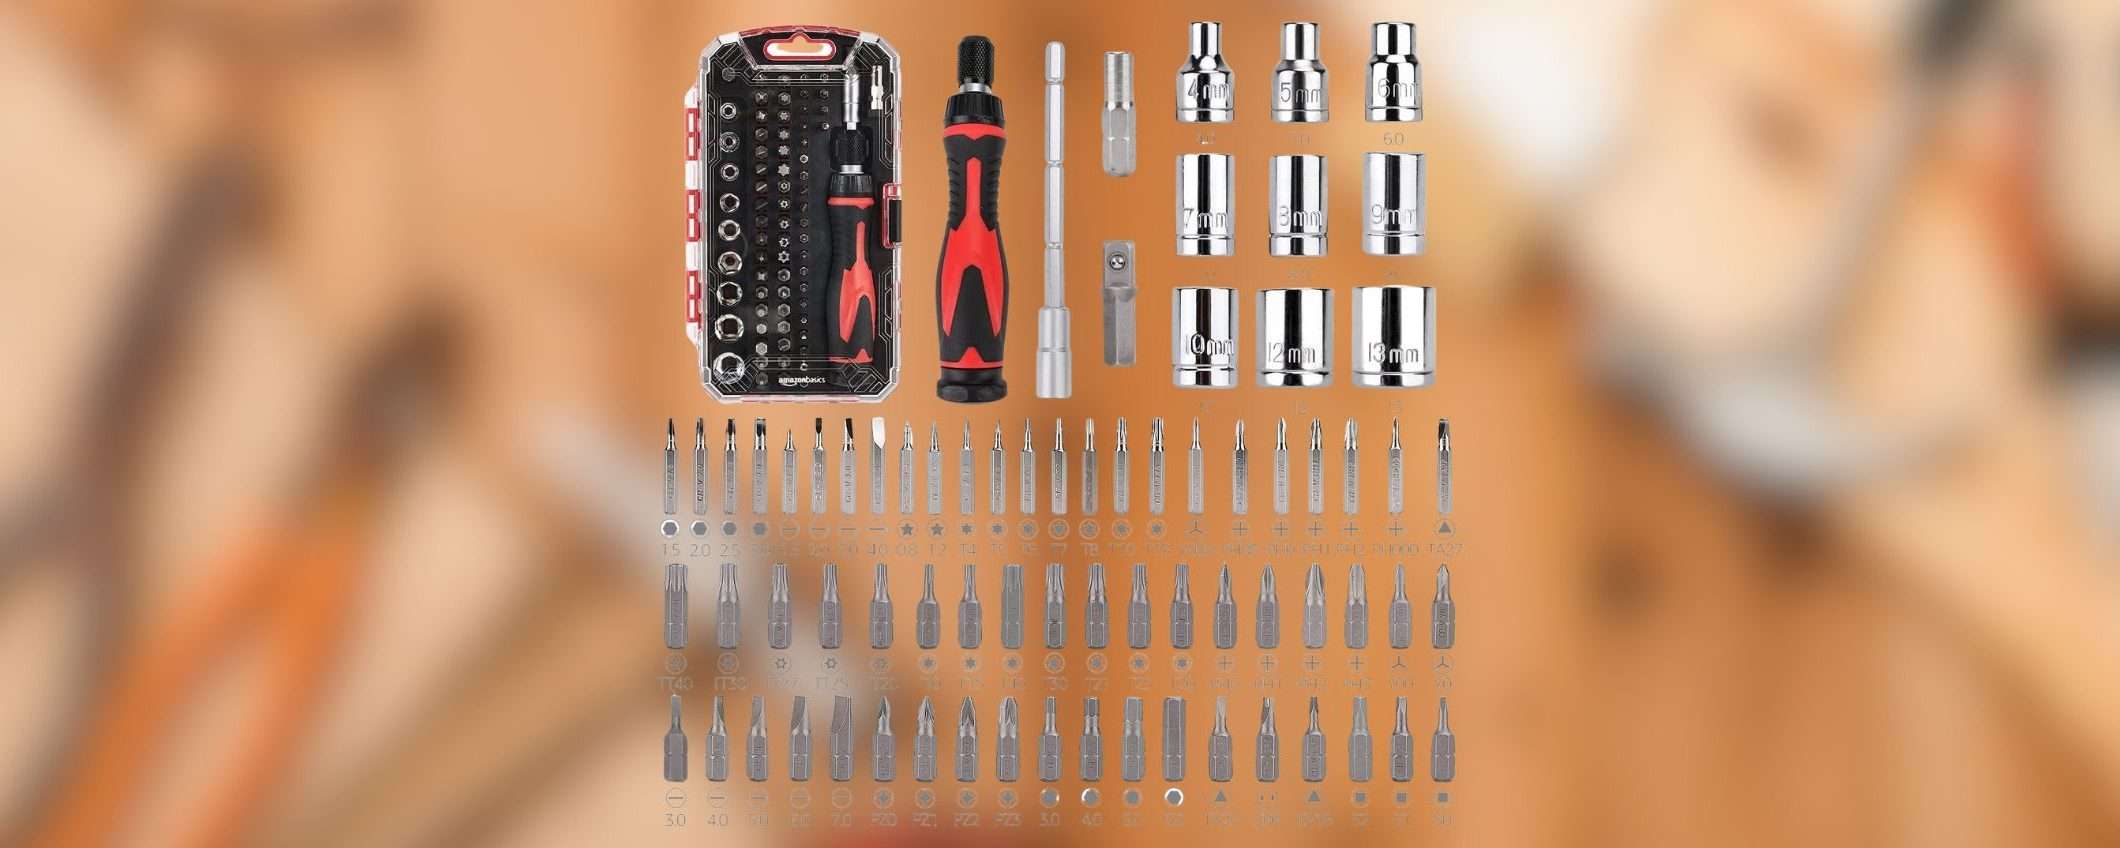 MAXI set di chiavi a cricchetto e cacciaviti da 73 pezzi a prezzo RIDICOLO su Amazon